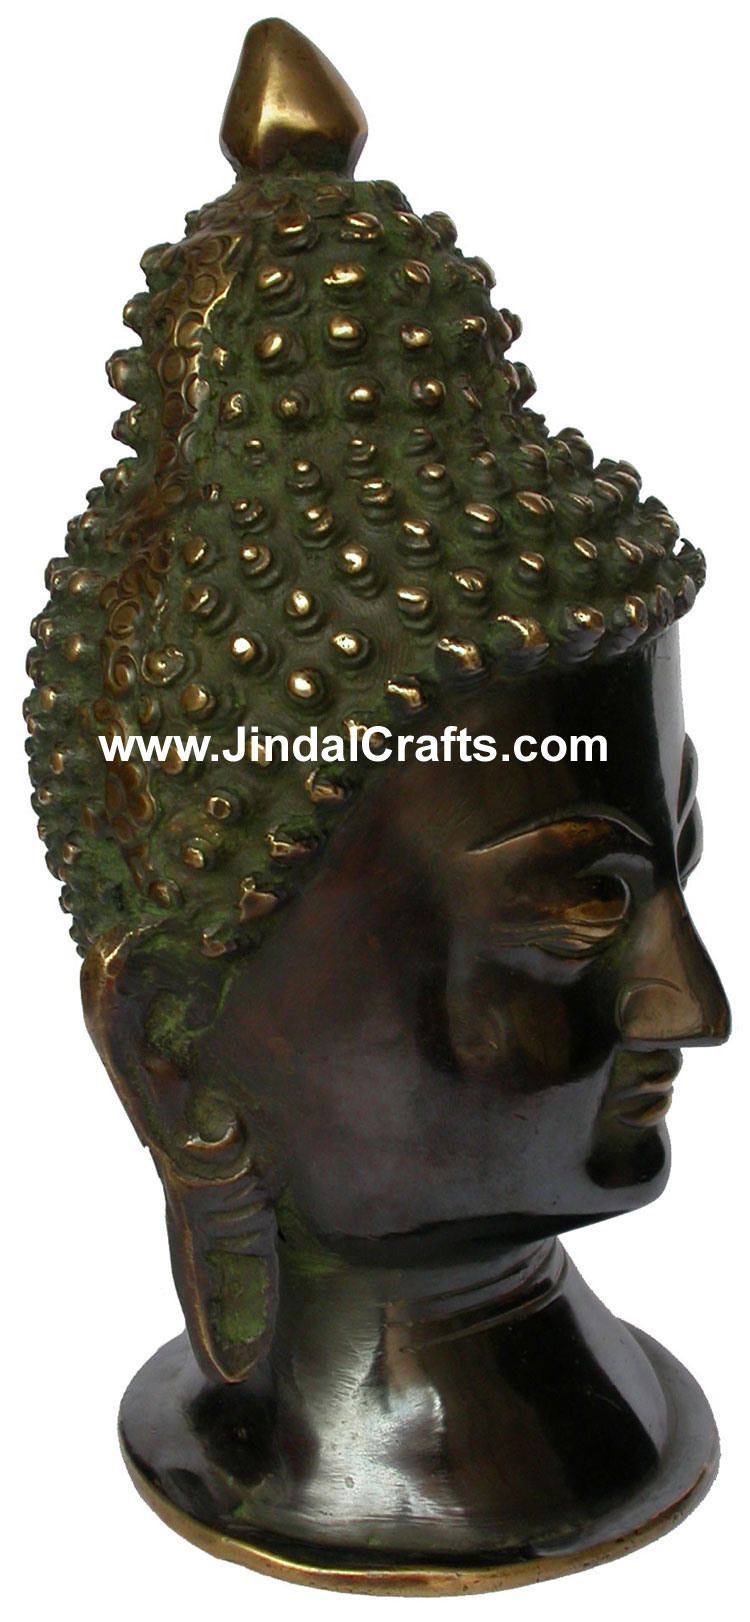 Brass Sculpture Antique Look Buddha Siddhartha Head